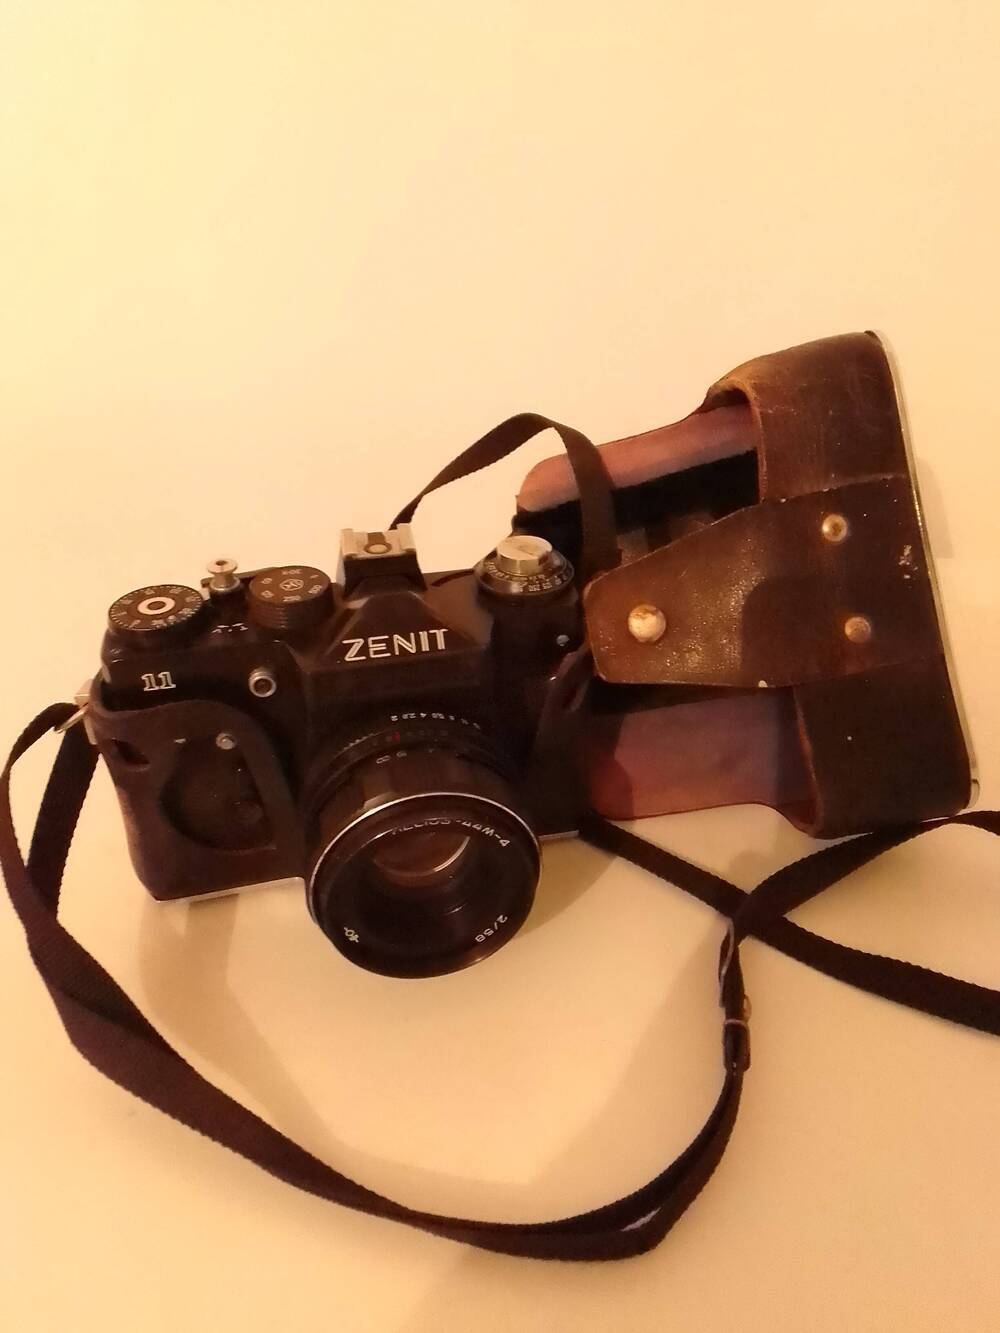 Фотоаппарат Зенит-11 в кожаном футляре